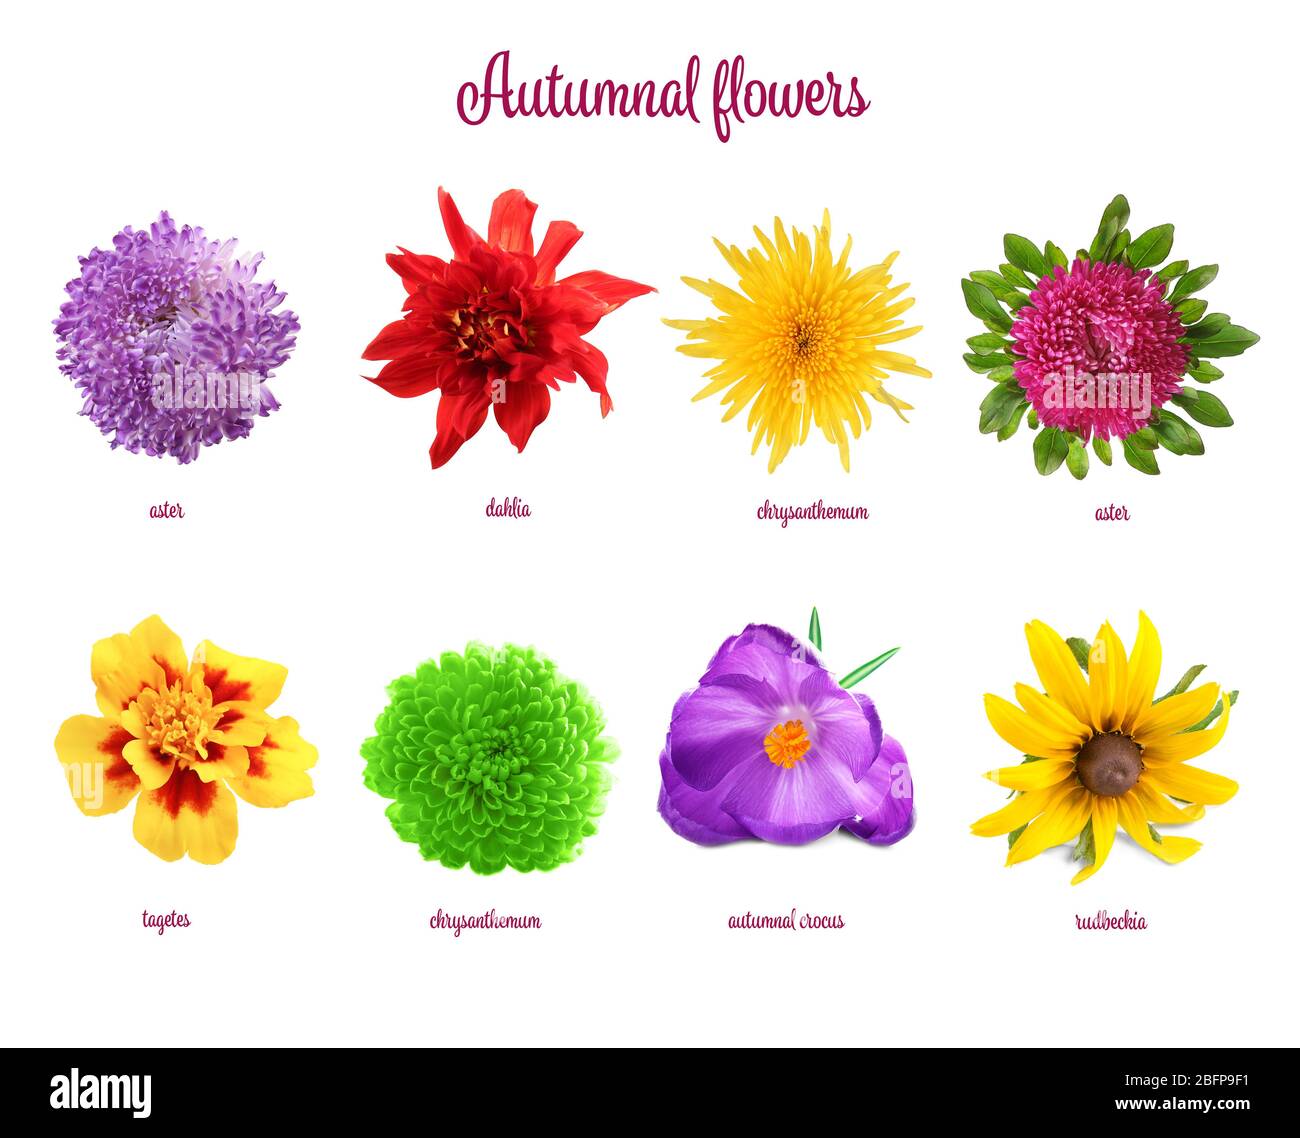 prettiest flower names